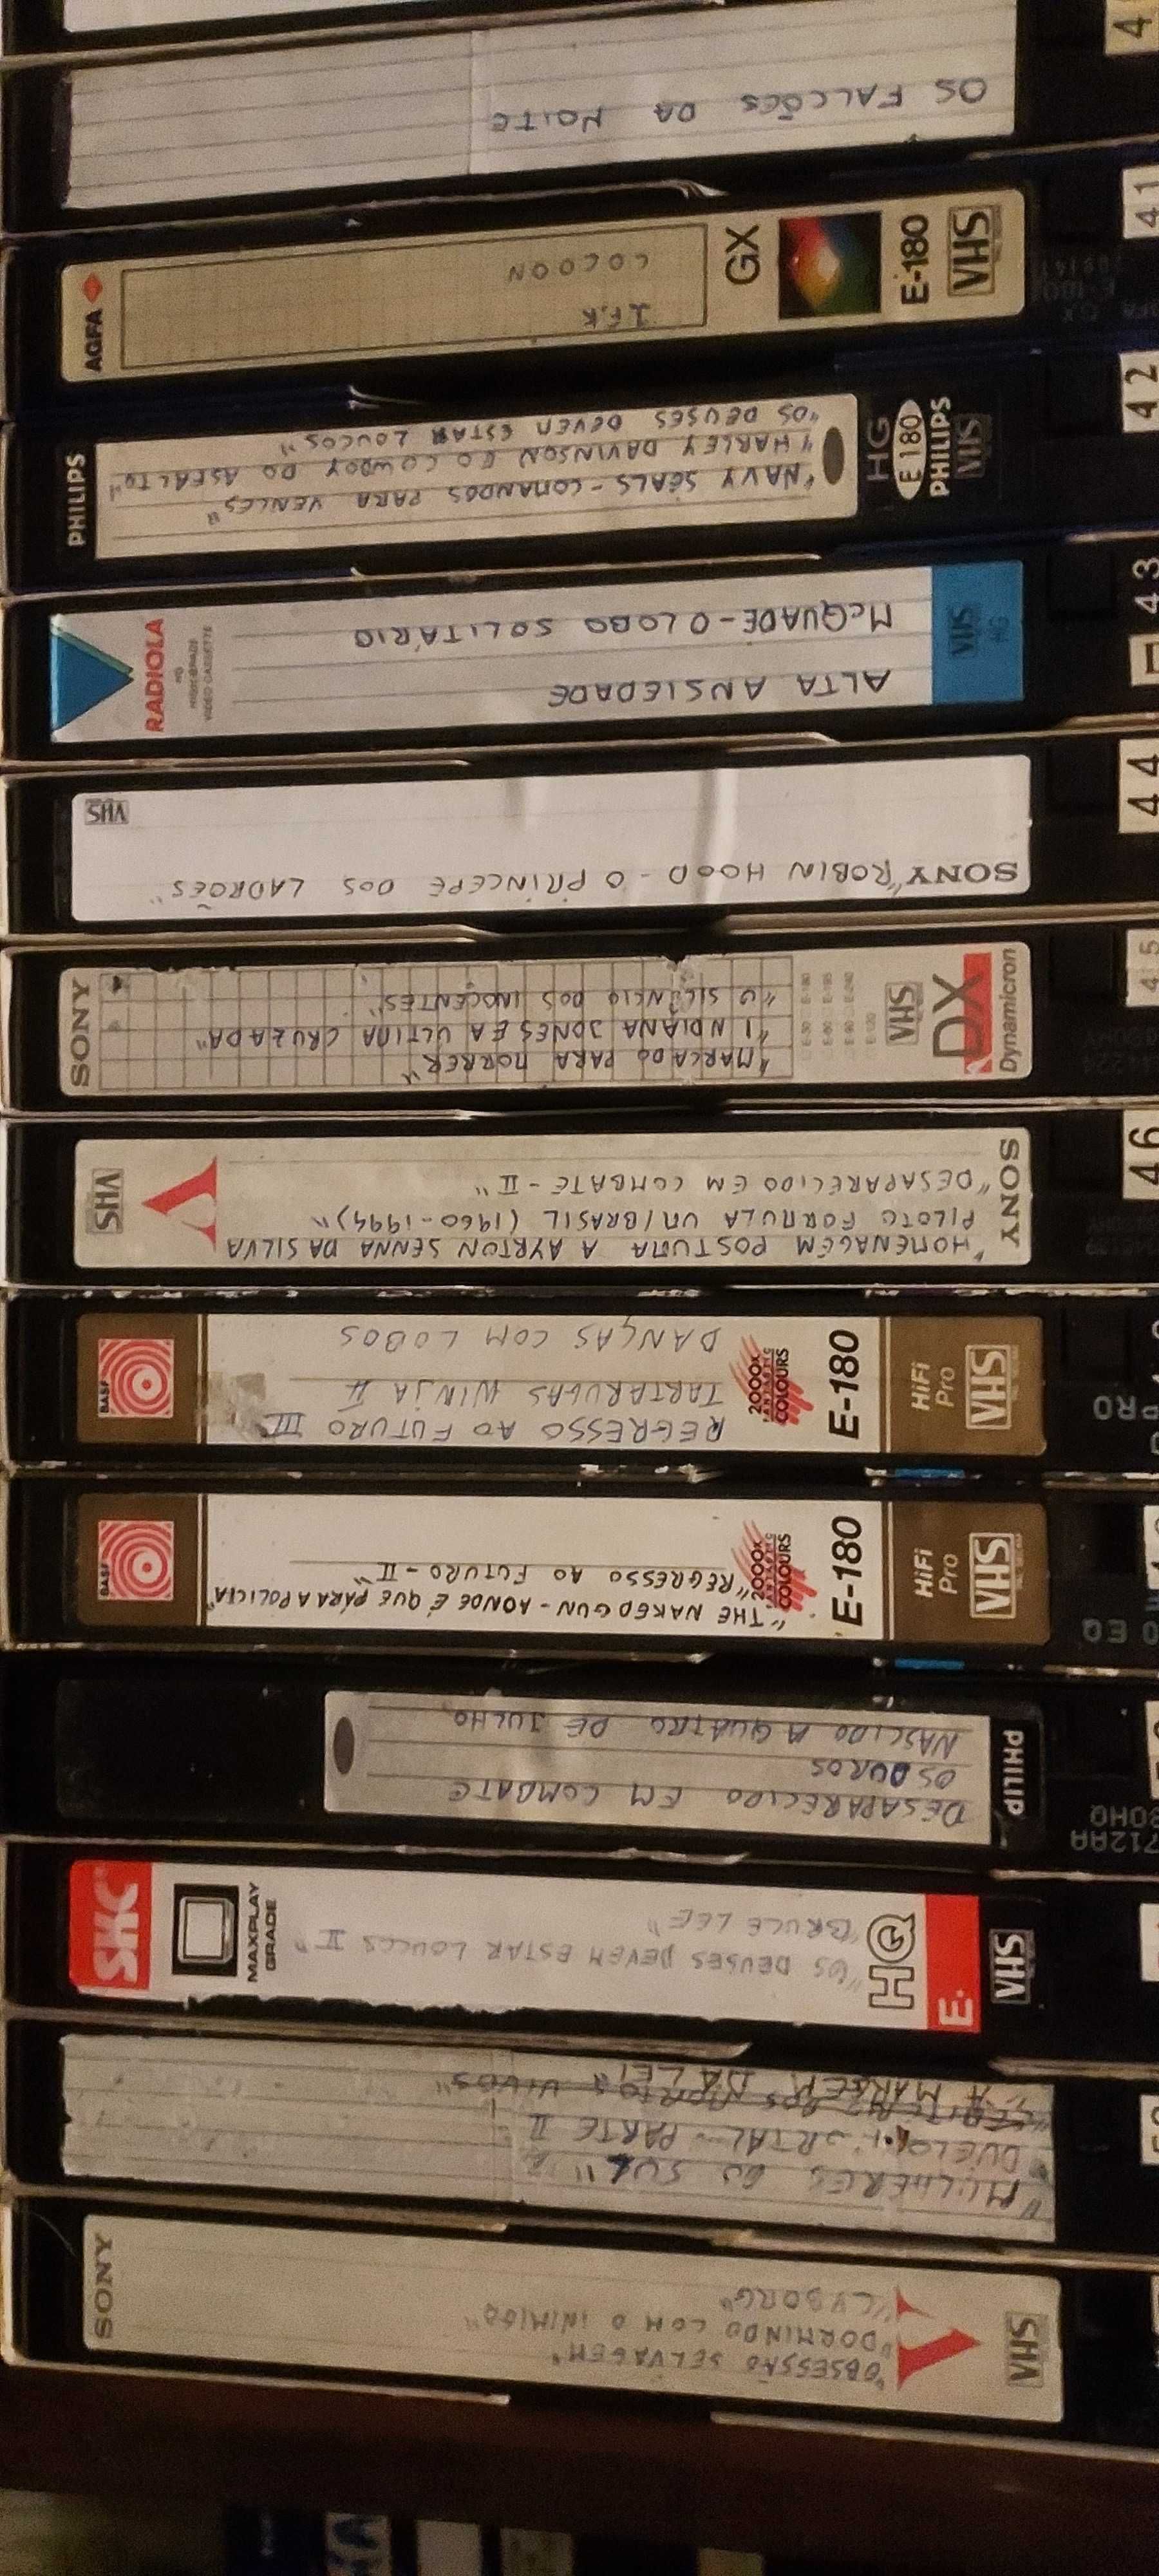 50 VHS. BONS FILMES E REPORTAGENS.  NOVAS A ESTREAR FOTOS ELUCIDATIVAS